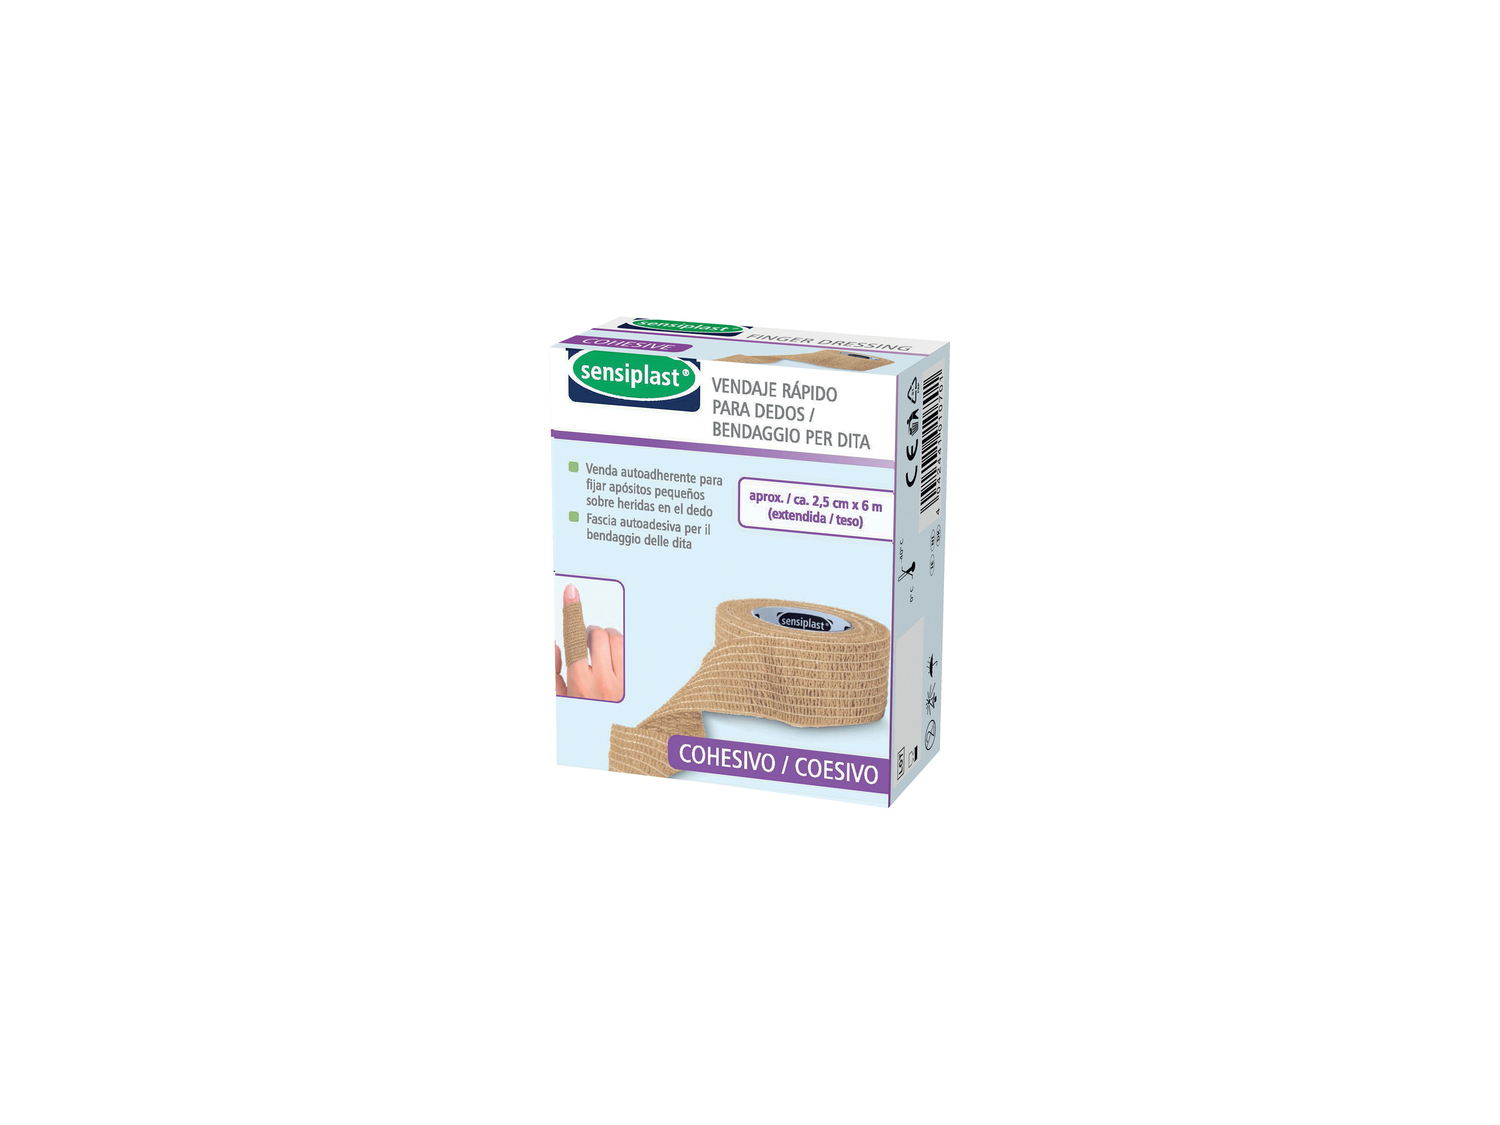 Bendaggi o garze sterili per medicazione Sensiplast, prezzo 1.99 &#8364; 
A ...